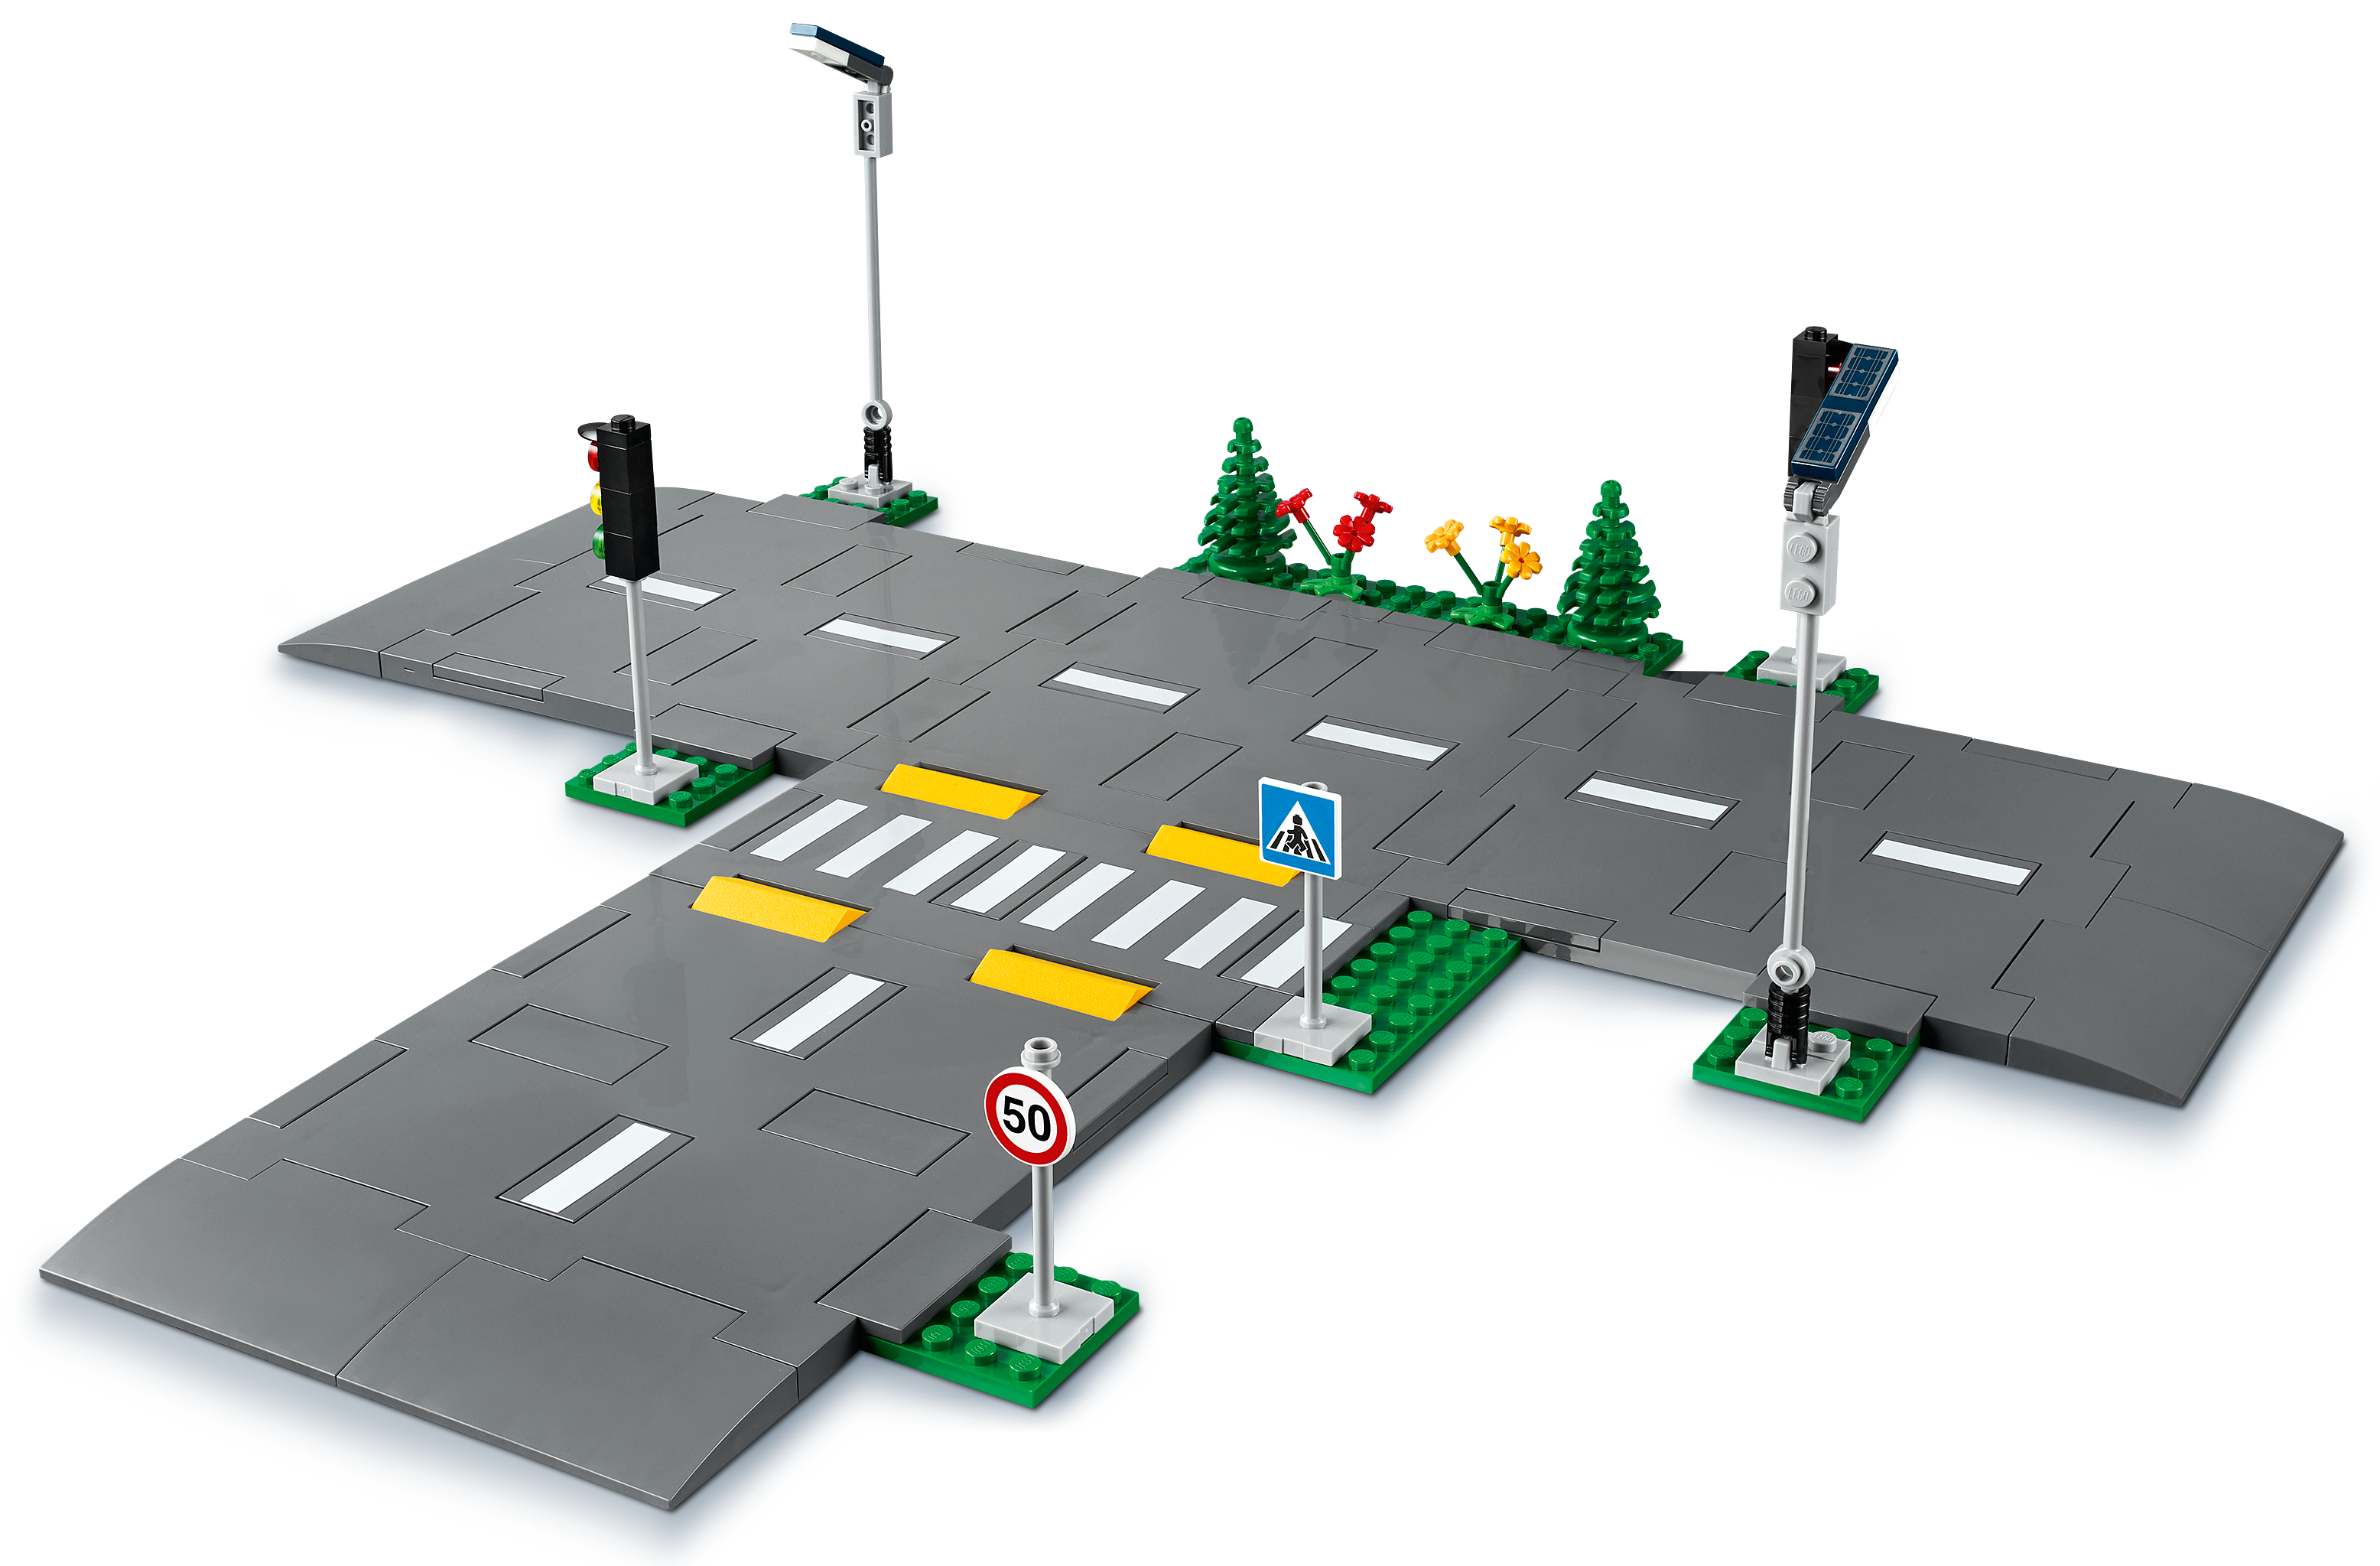 LEGO 60304 City Bases de Carretera Set de Construcción con Placas de Carretera, Semáforos y Ladrillos Que Brillan en la Oscuridad 